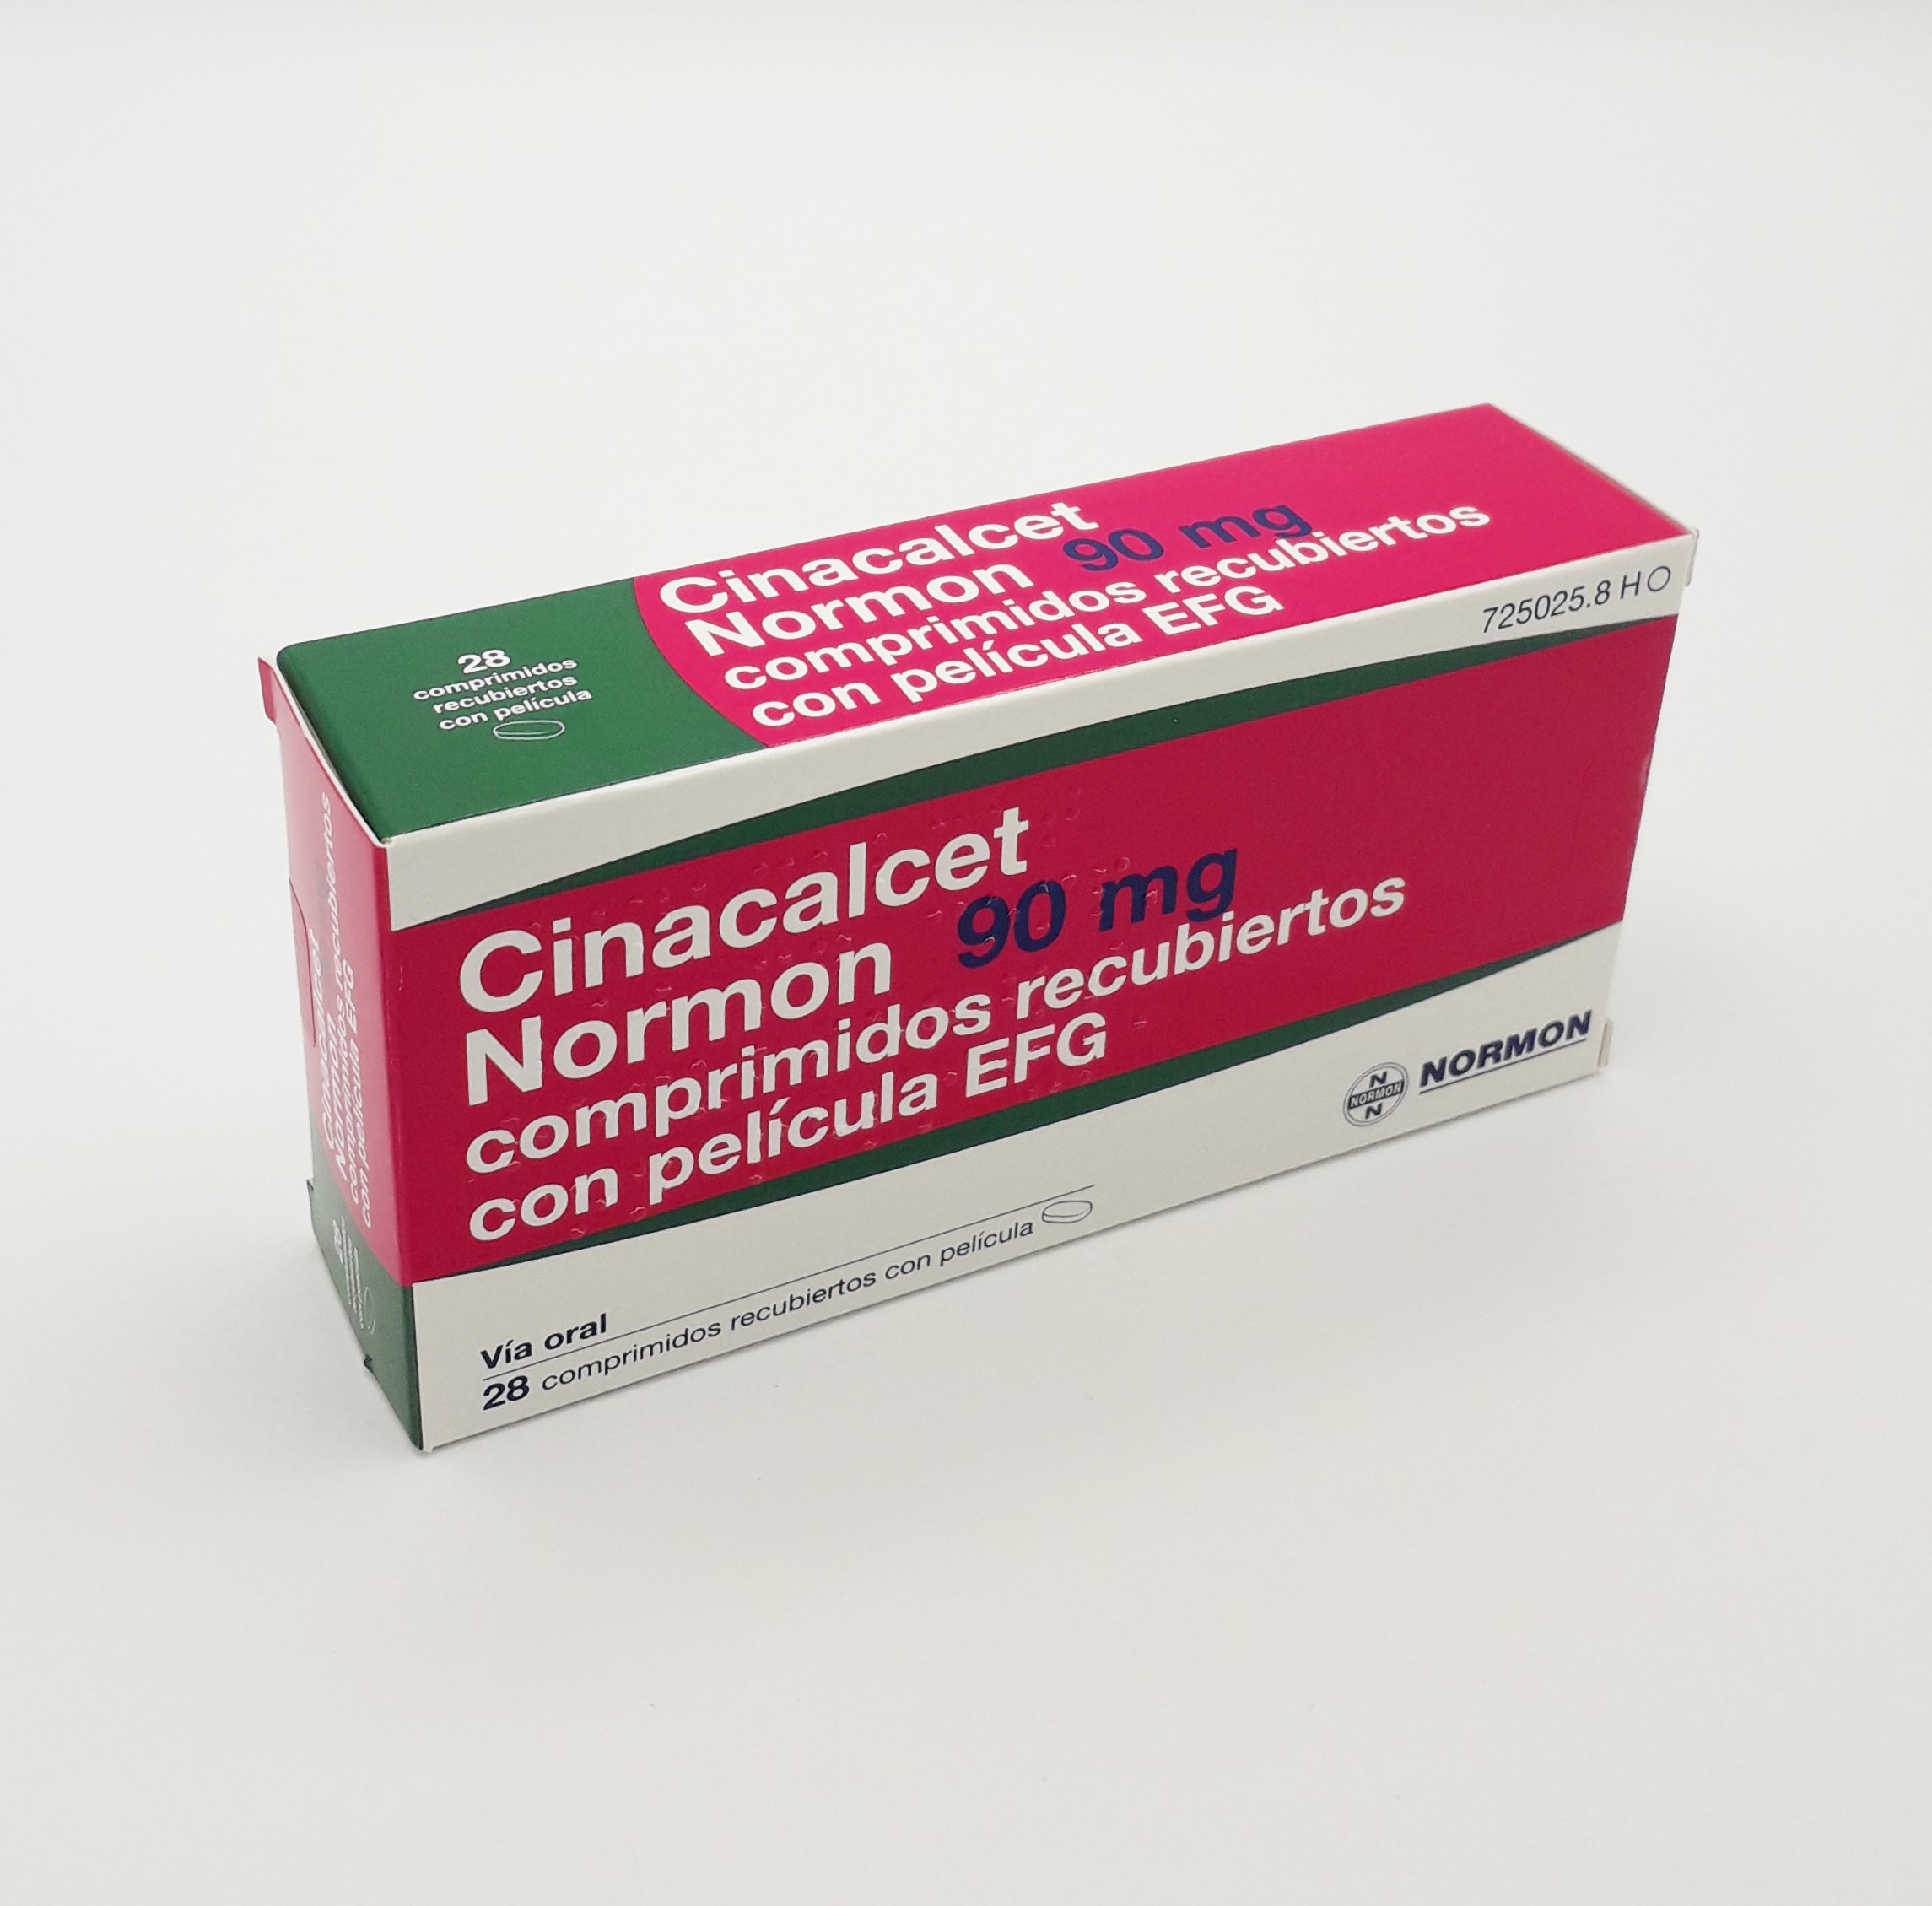 Cinacalcet Normon Efg 90 Mg 28 Comprimidos Recubiertos Farmacéuticos 5417